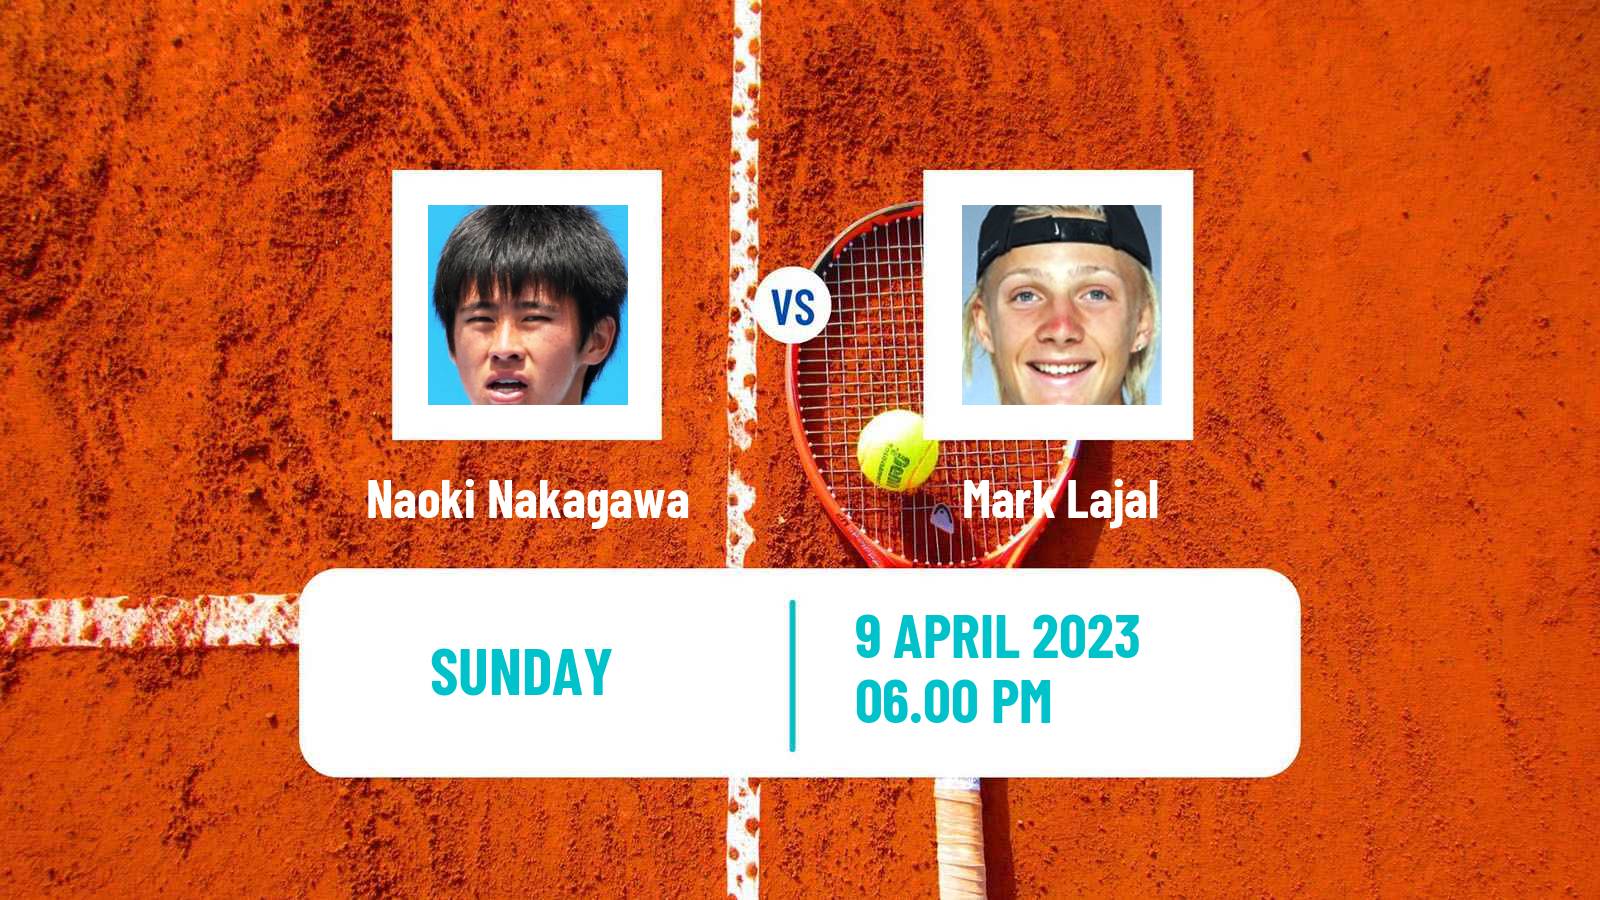 Tennis ATP Challenger Naoki Nakagawa - Mark Lajal